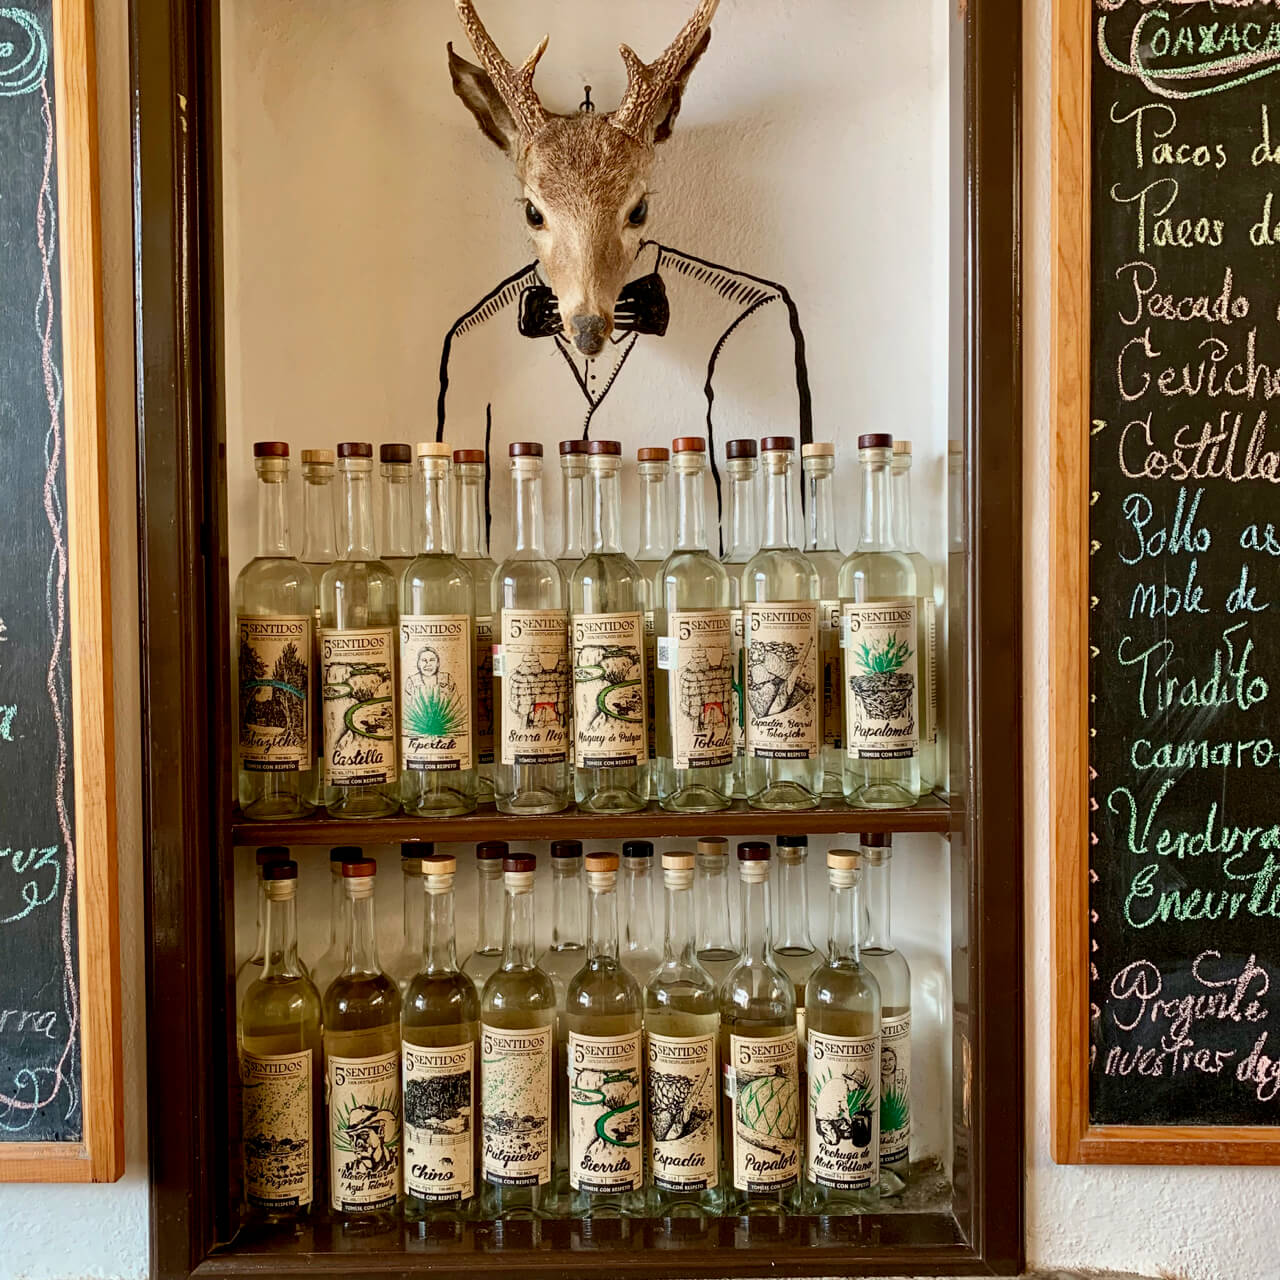 Bottles of agave spirits at El Destilado